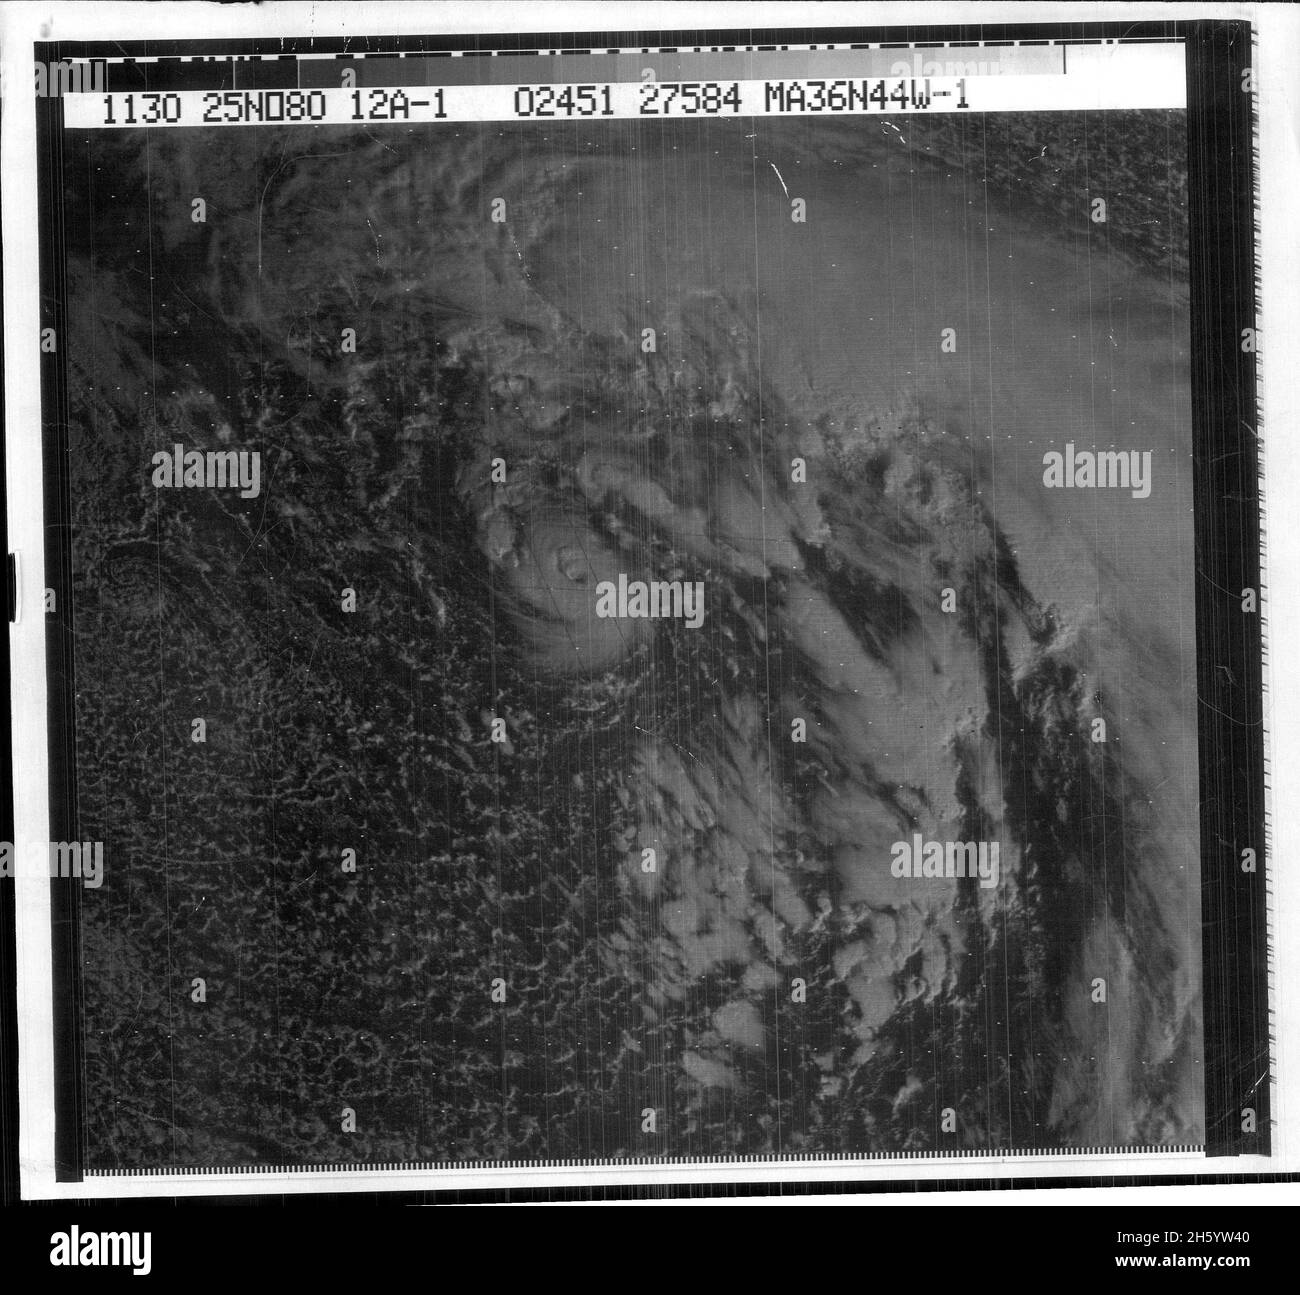 Ouragan Karl le 25 novembre 1980, vu à partir d'images satellites Banque D'Images